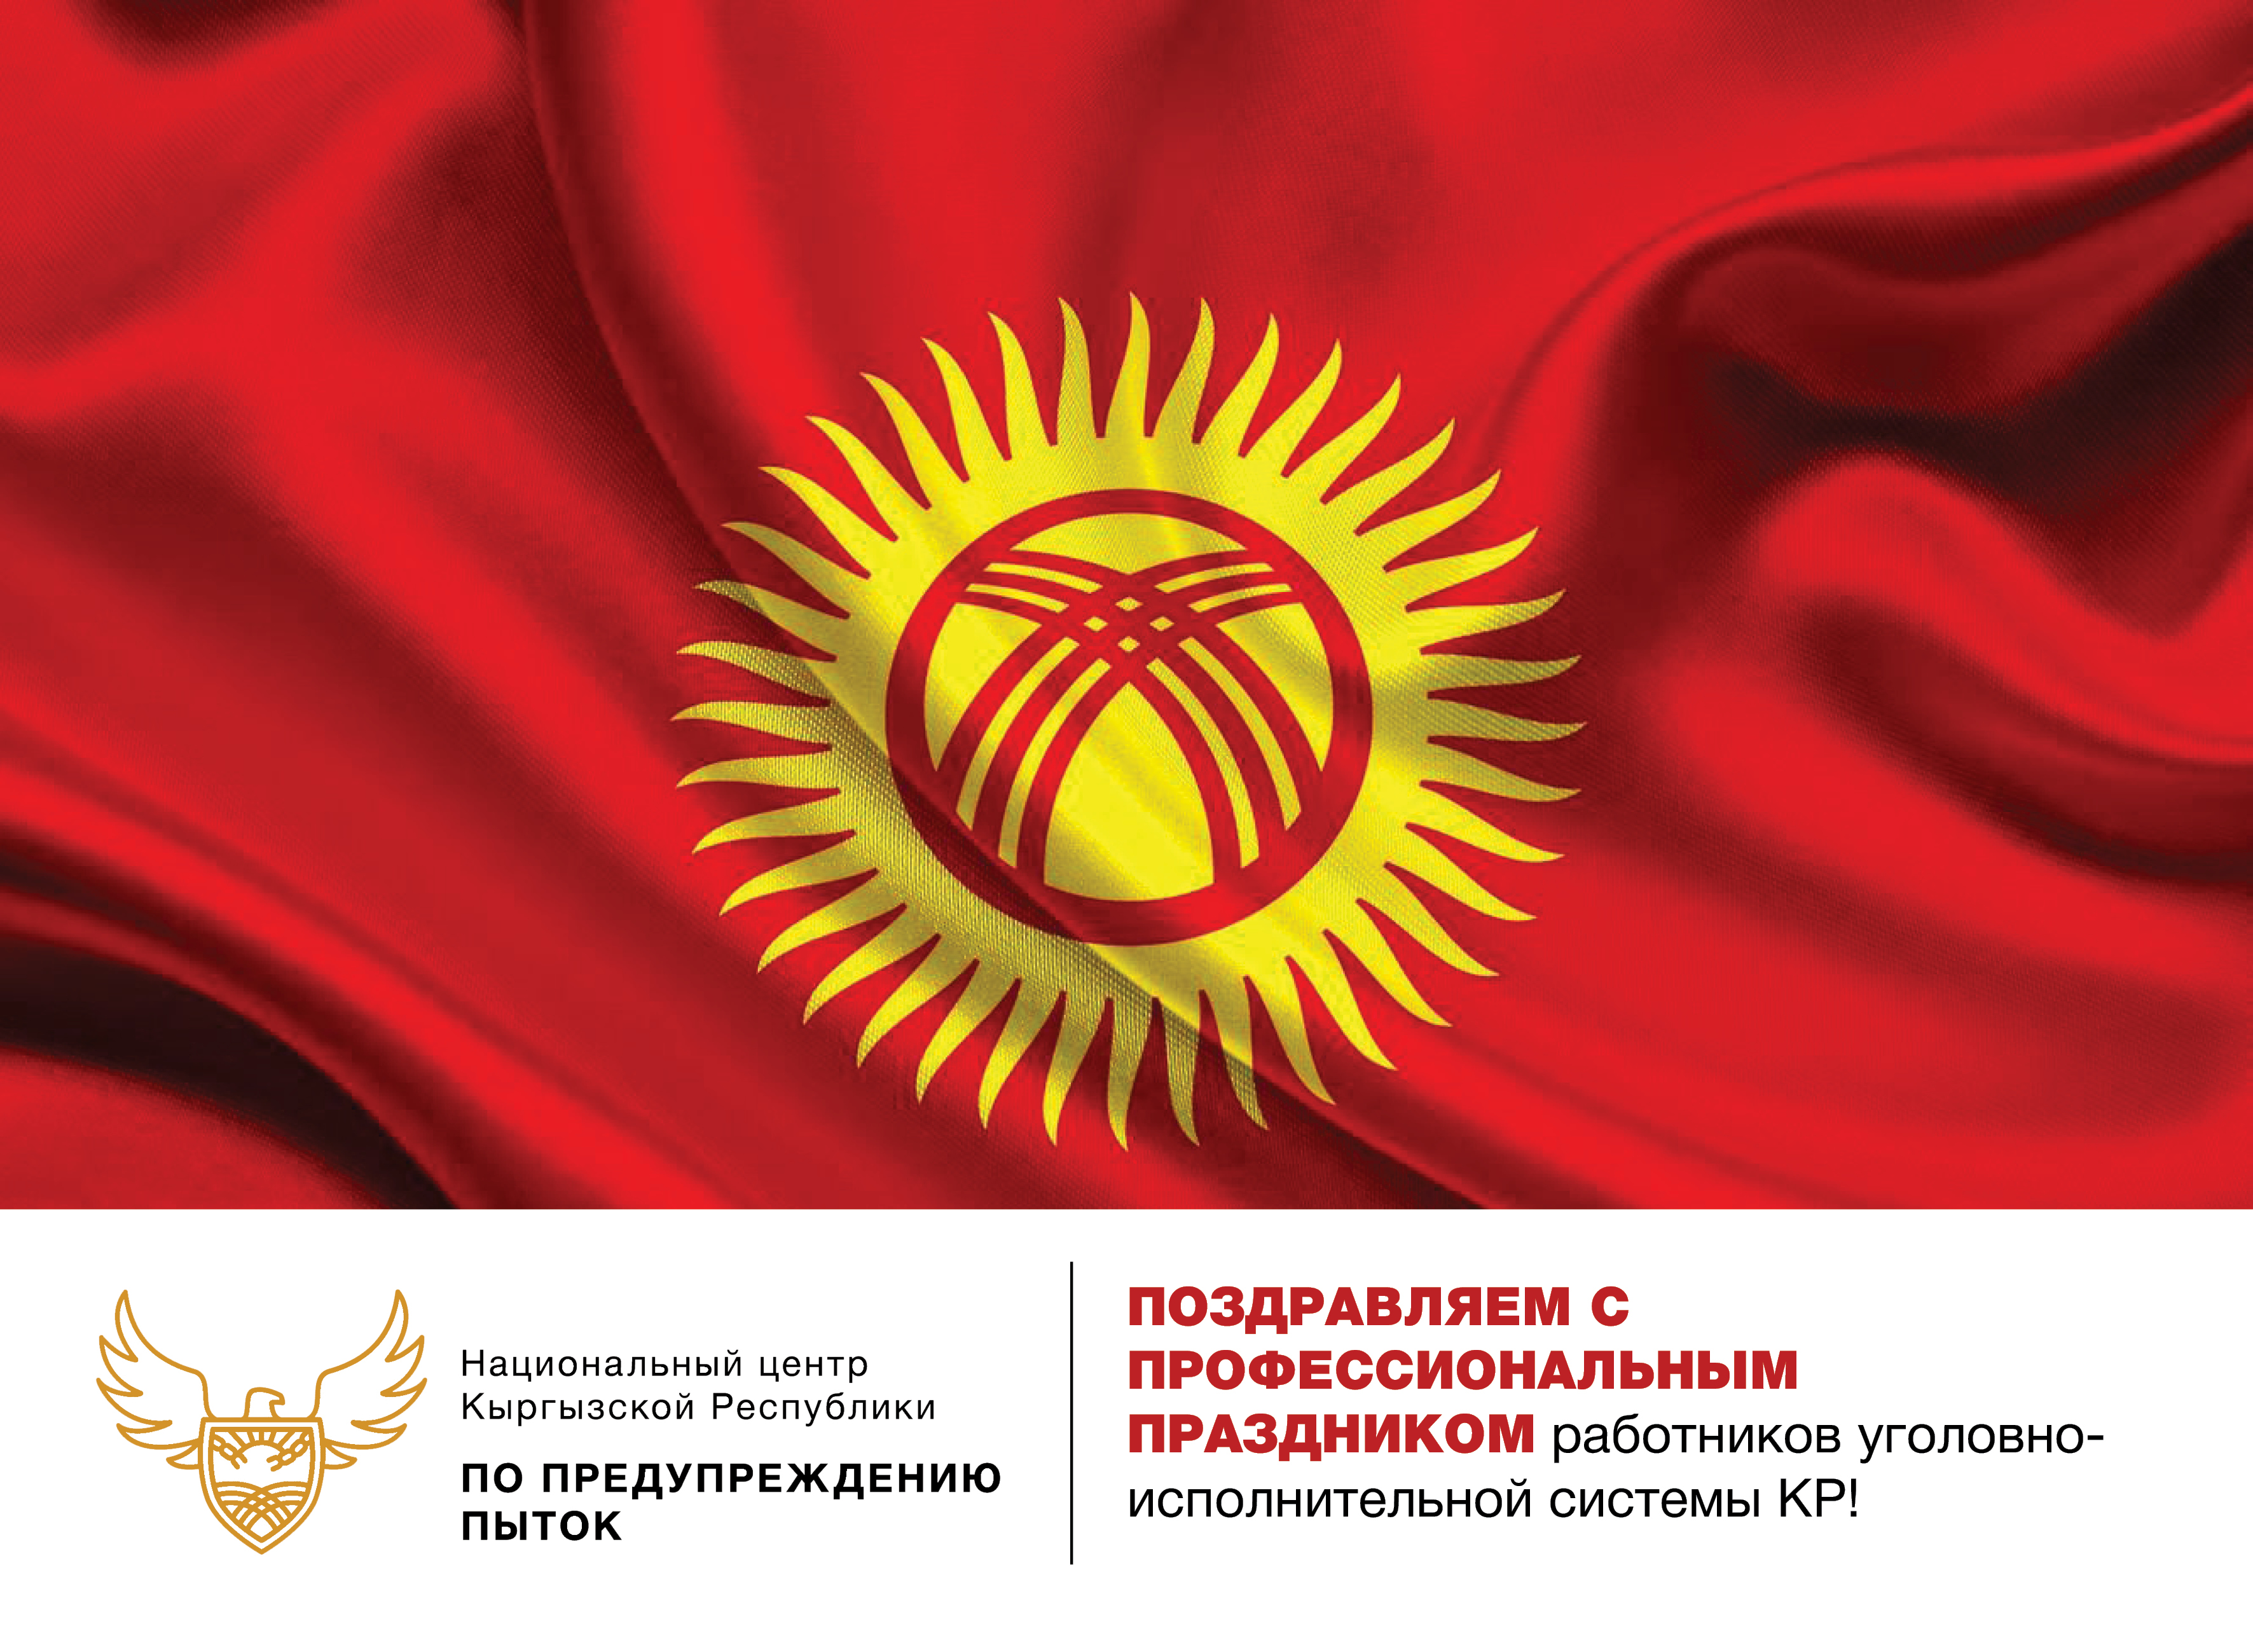 Национальный центр Кыргызской Республики по предупреждению пыток поздравляет с профессиональным праздником работников уголовно-исполнительной системы КР.